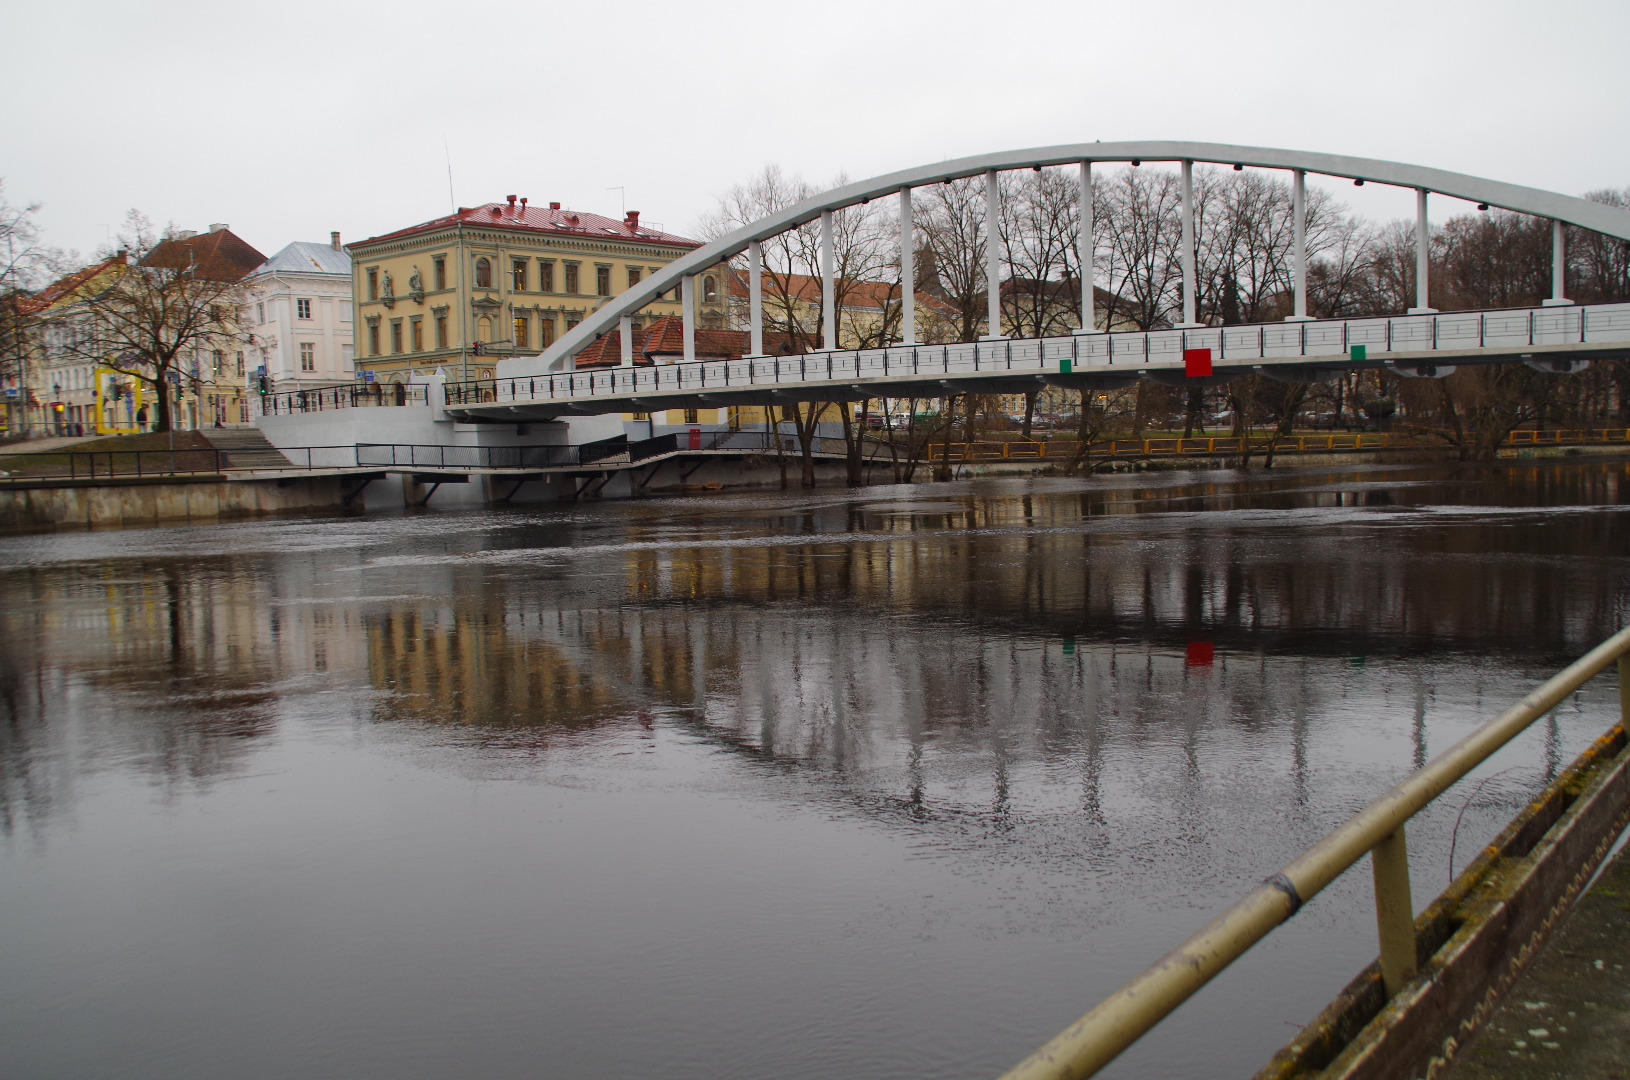 Tartu : The stone sild = the stone bridge rephoto